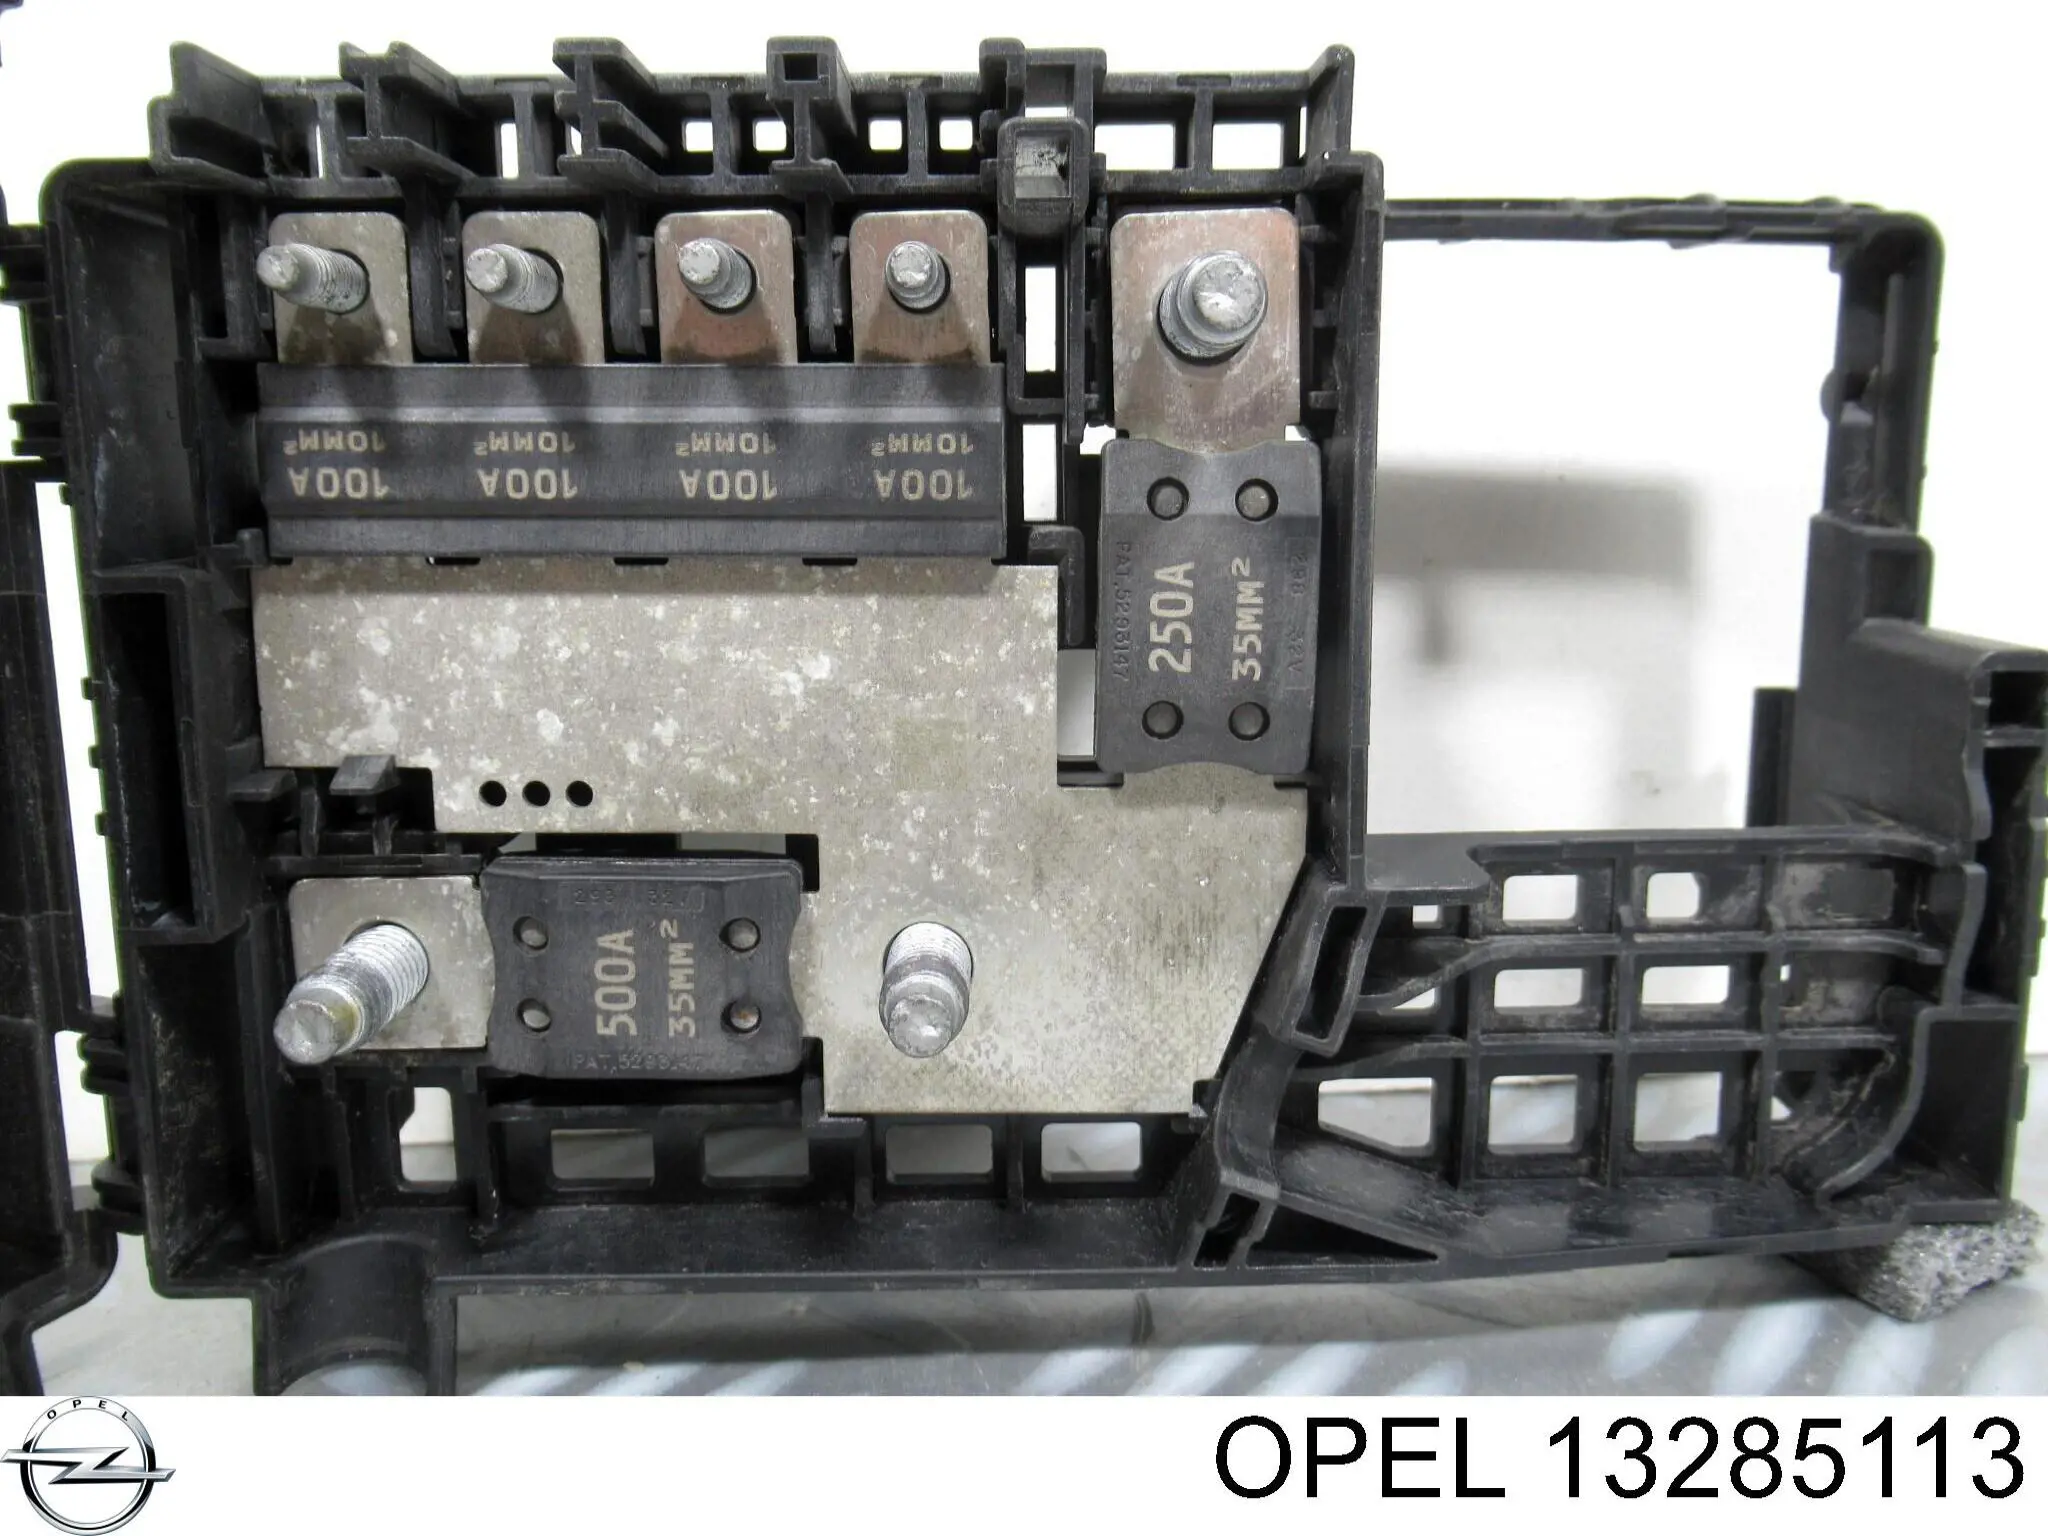 13285113 Opel caja de fusibles